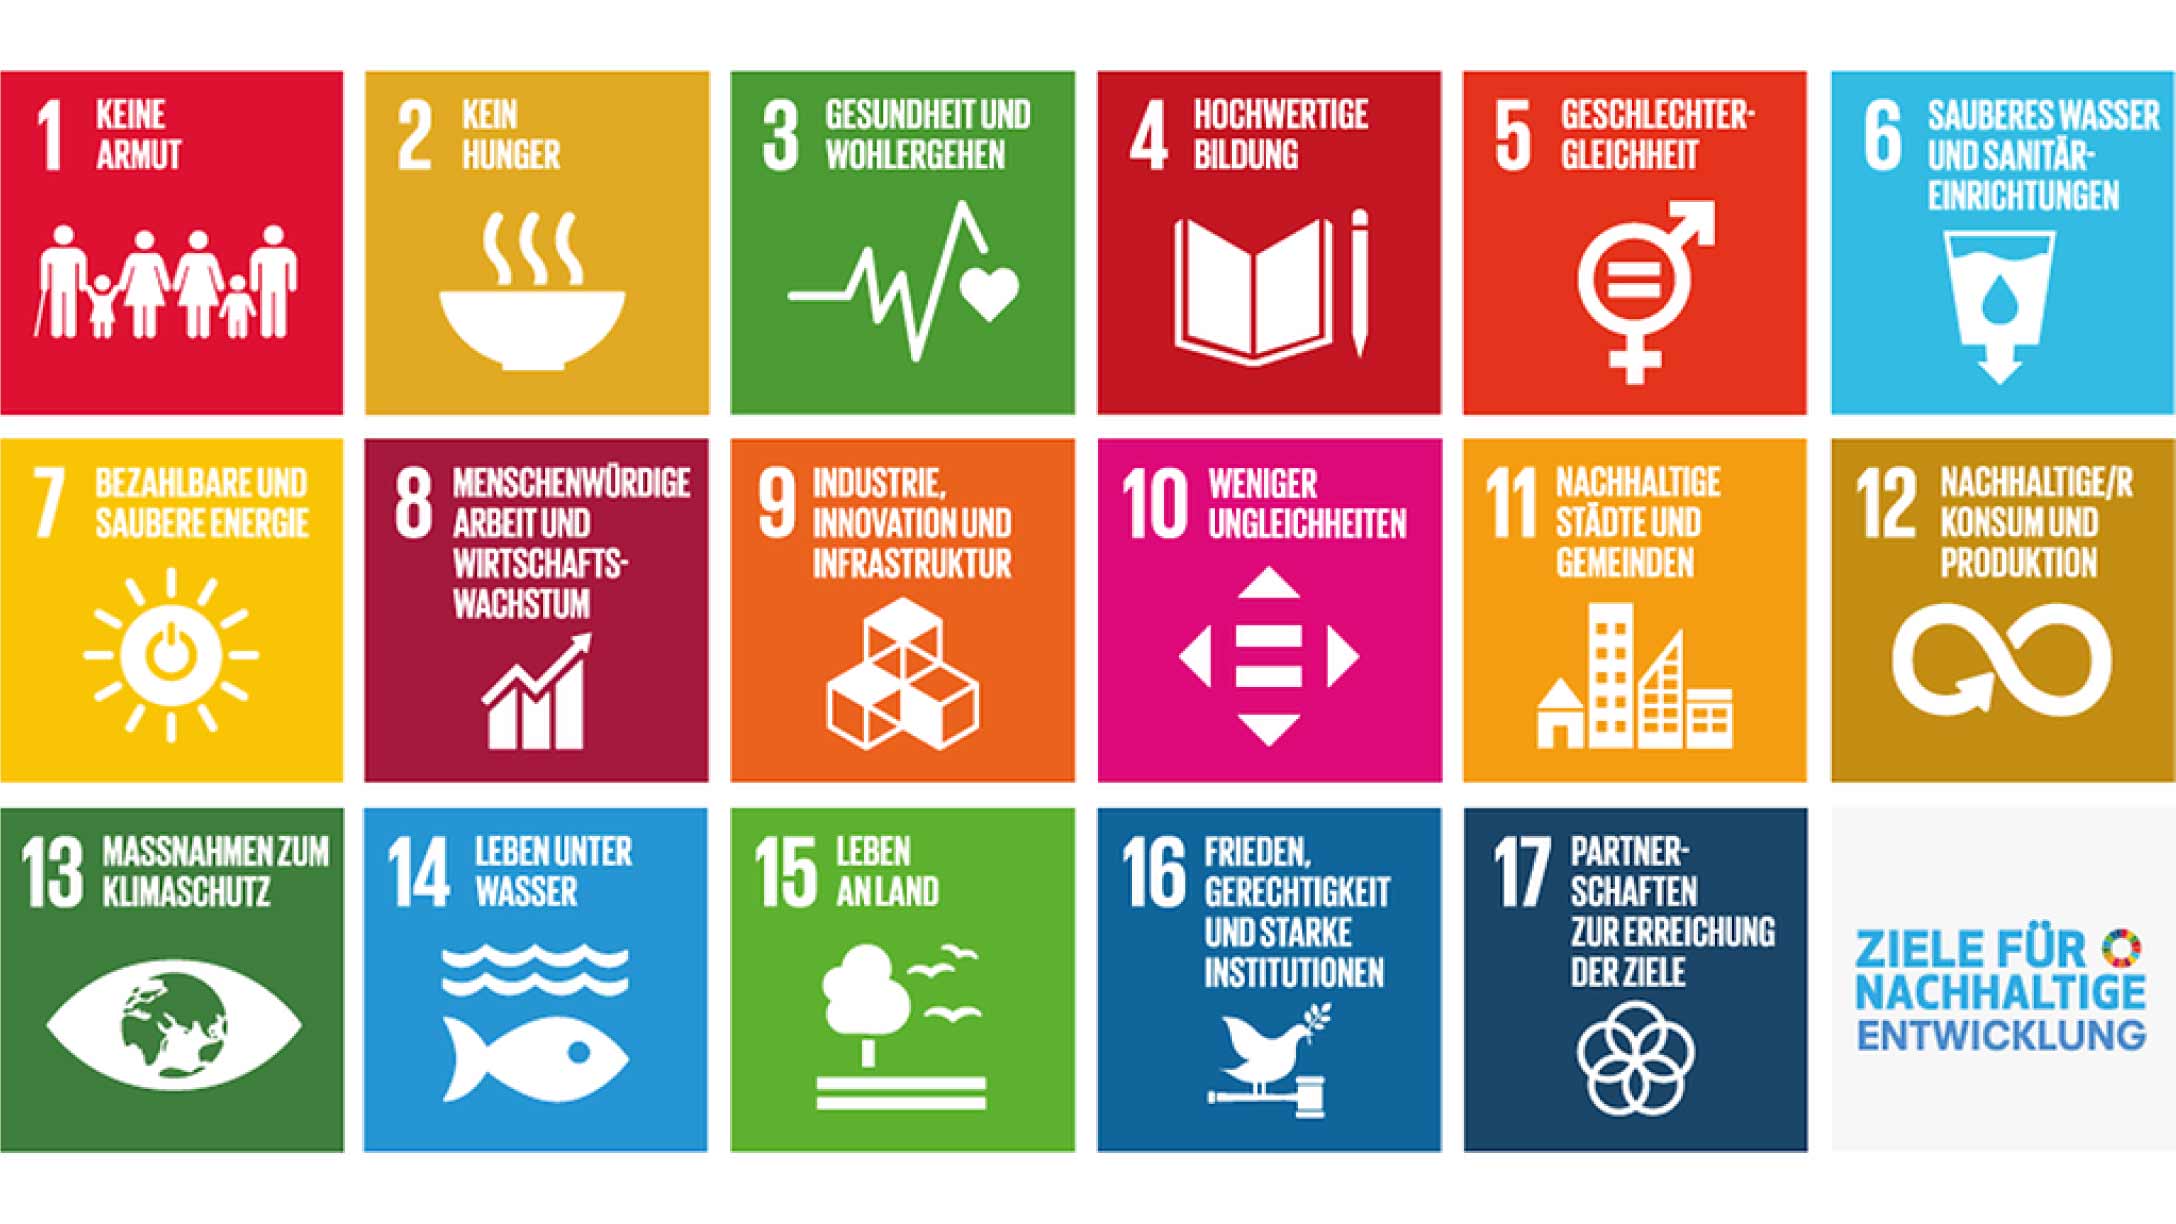 Bild der Ziele für nachhaltige Entwicklung